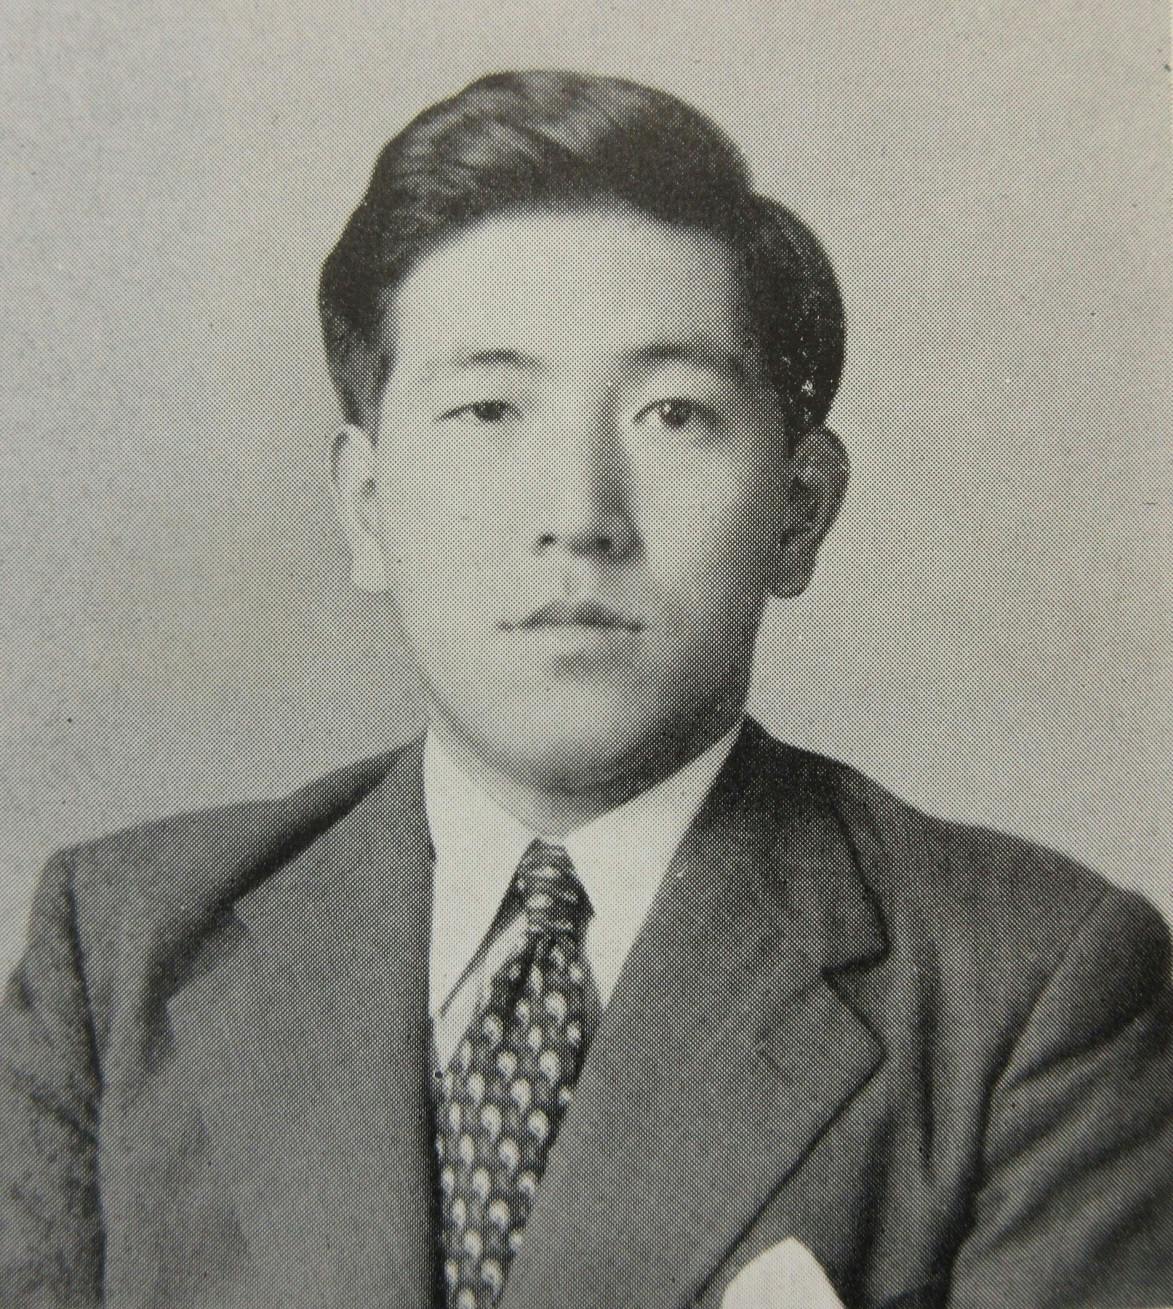 Young Toyoda Shoichiro portrait